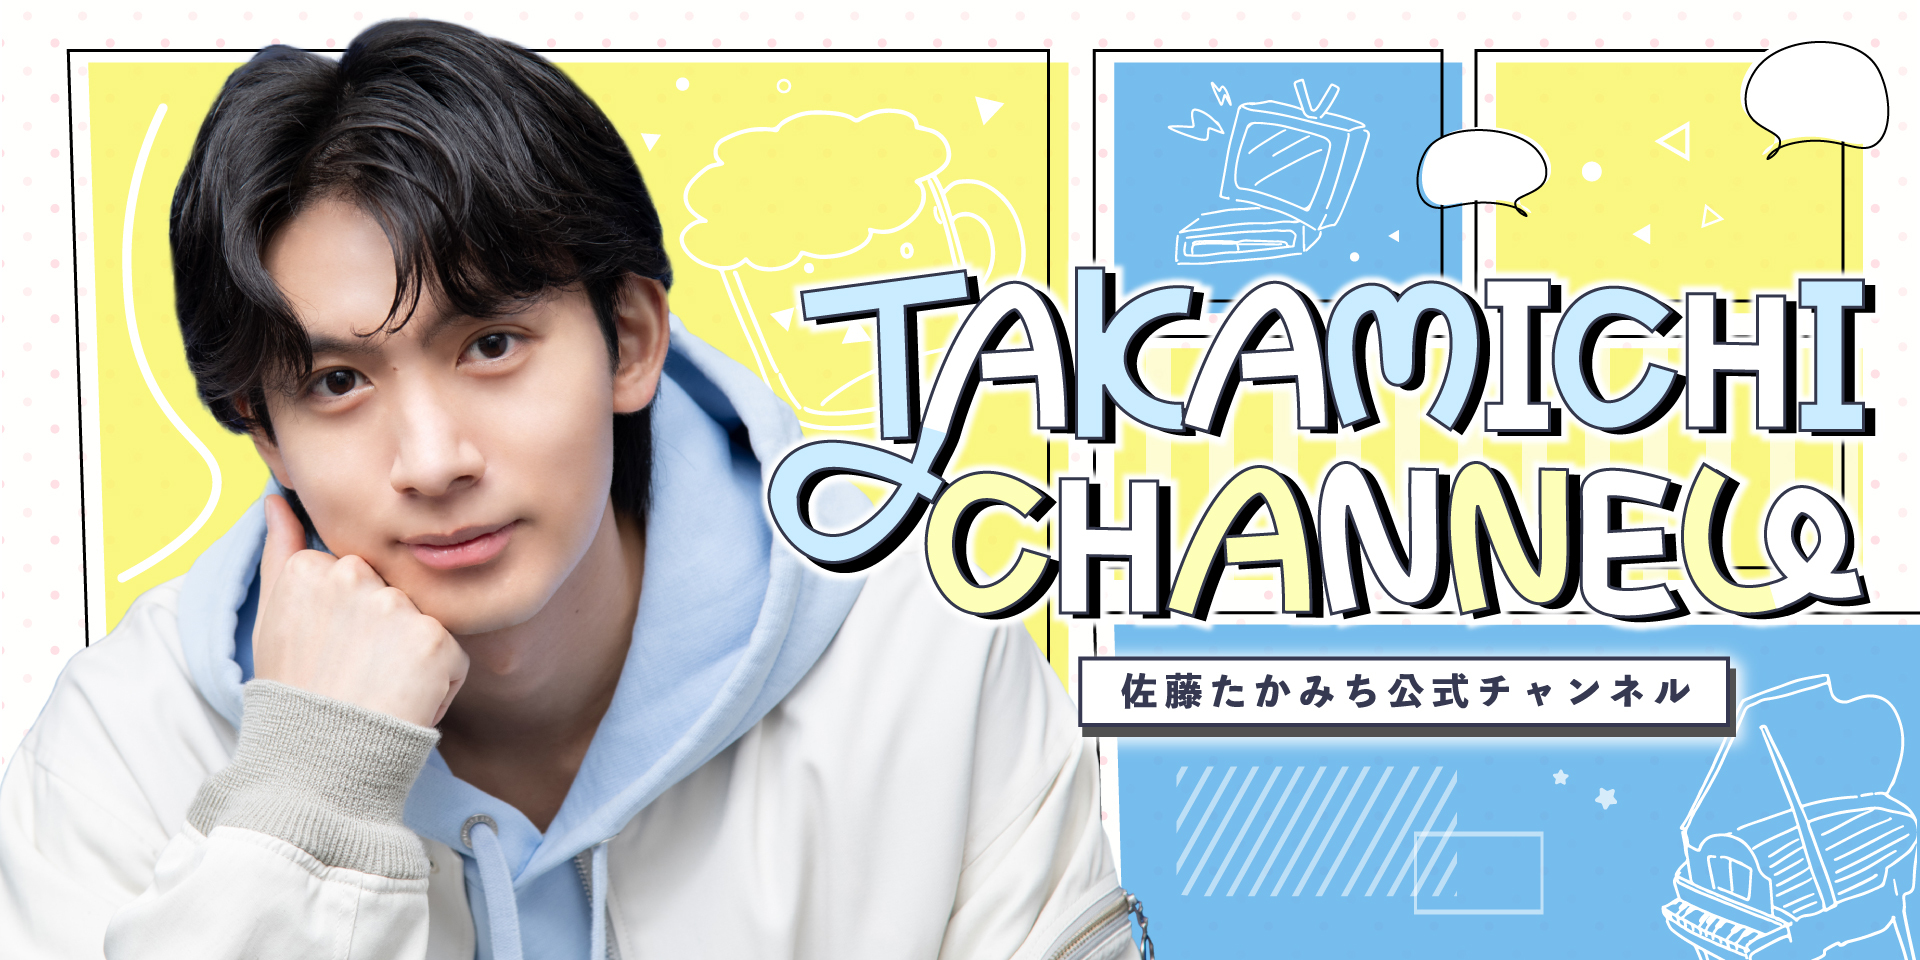 ニコニコチャンネルプラス「佐藤たかみち公式チャンネル「TAKAMICHI CHANNEL」」がオープン！初回放送のゲストは、長江崚行さん！